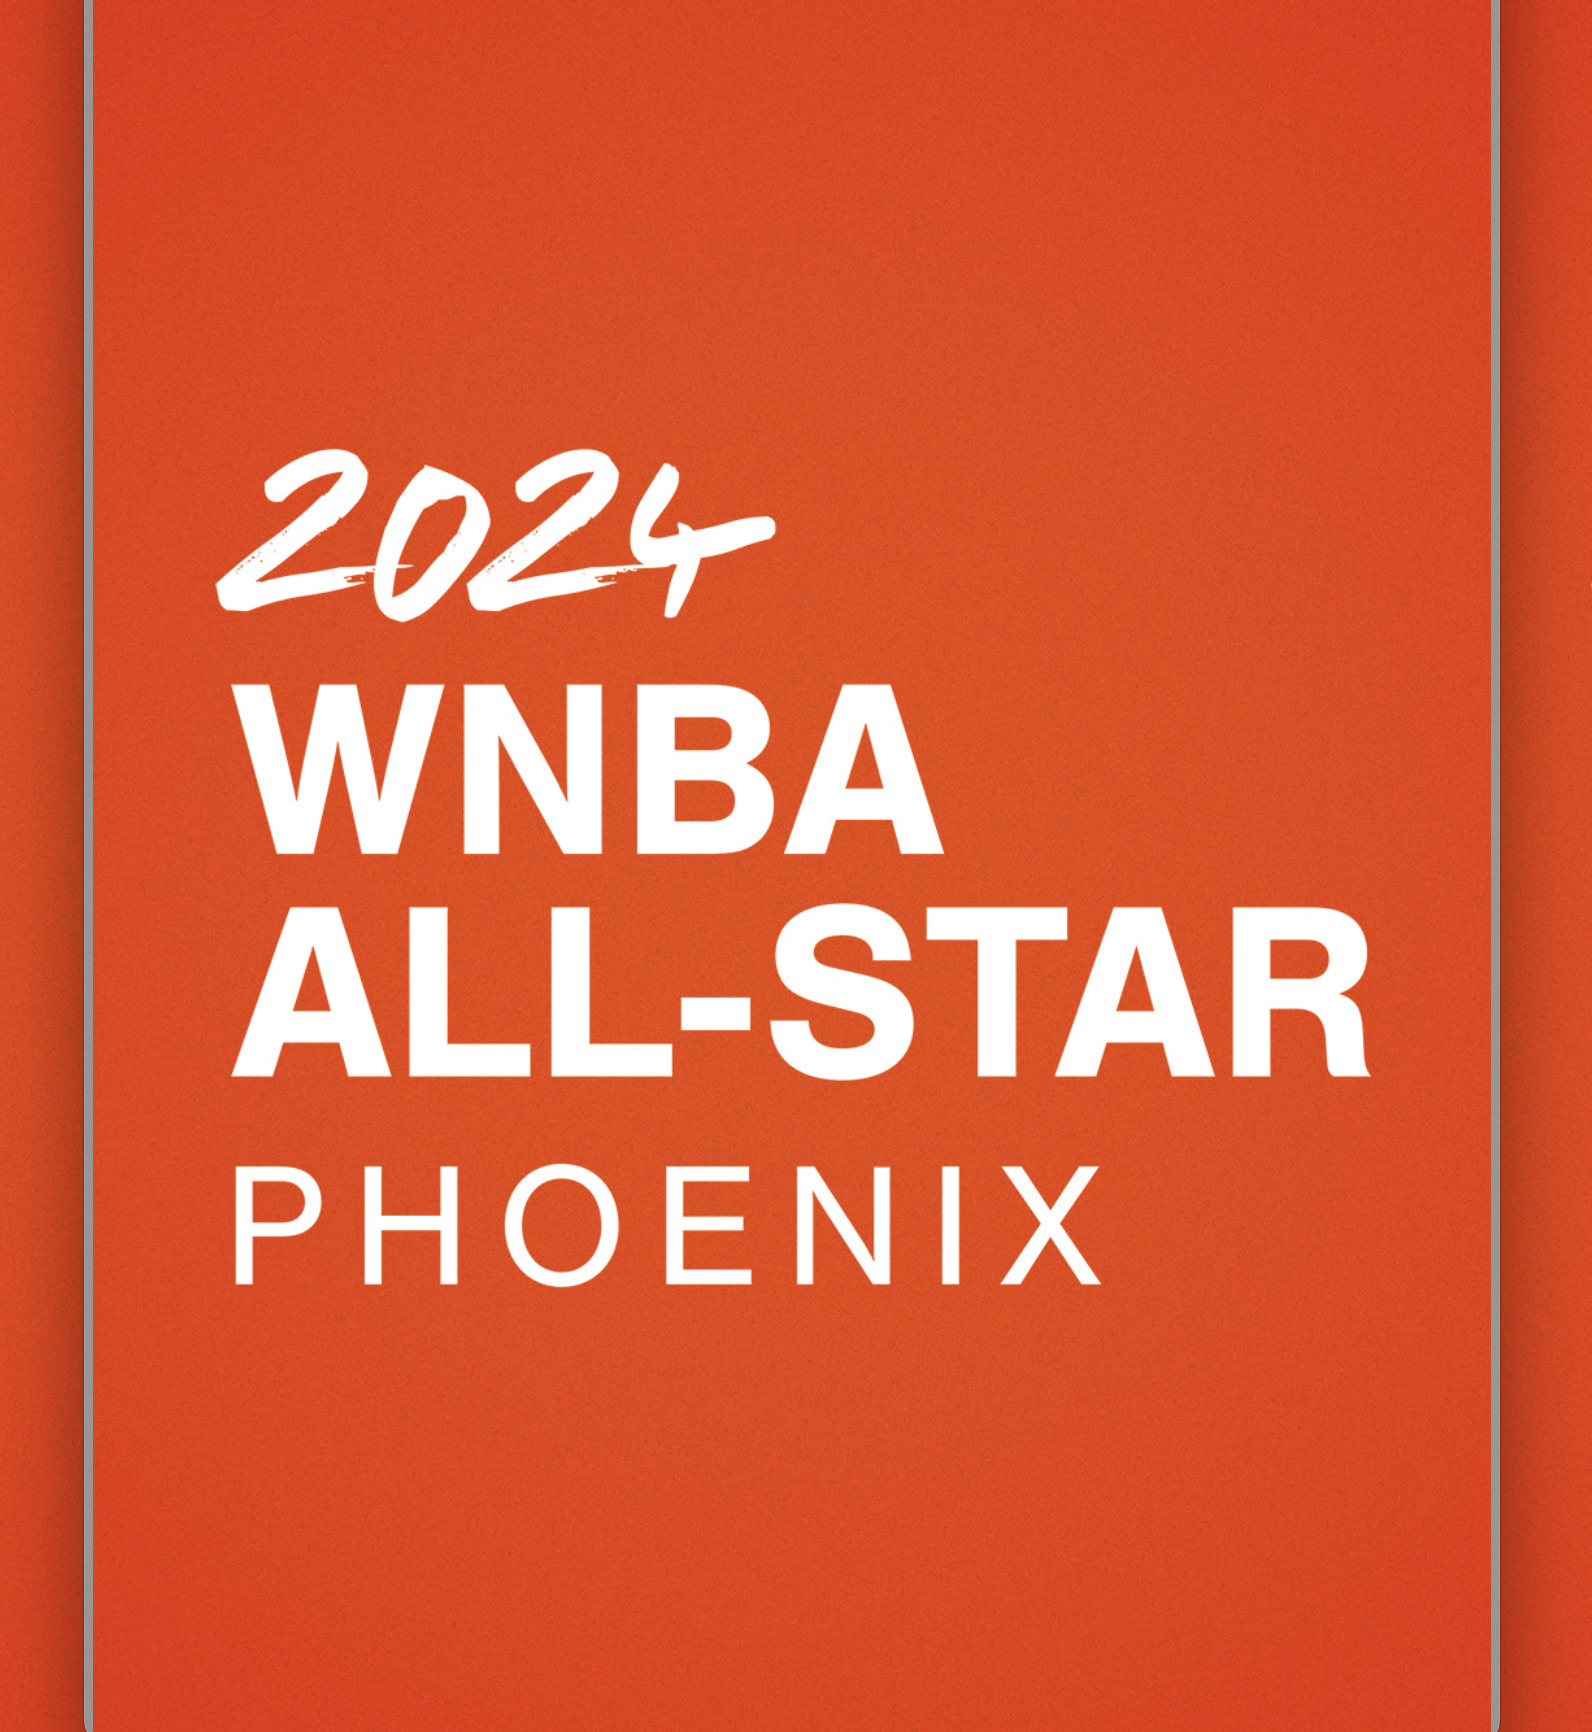 Phoenix to host 2024 WNBA AllStar Weekend